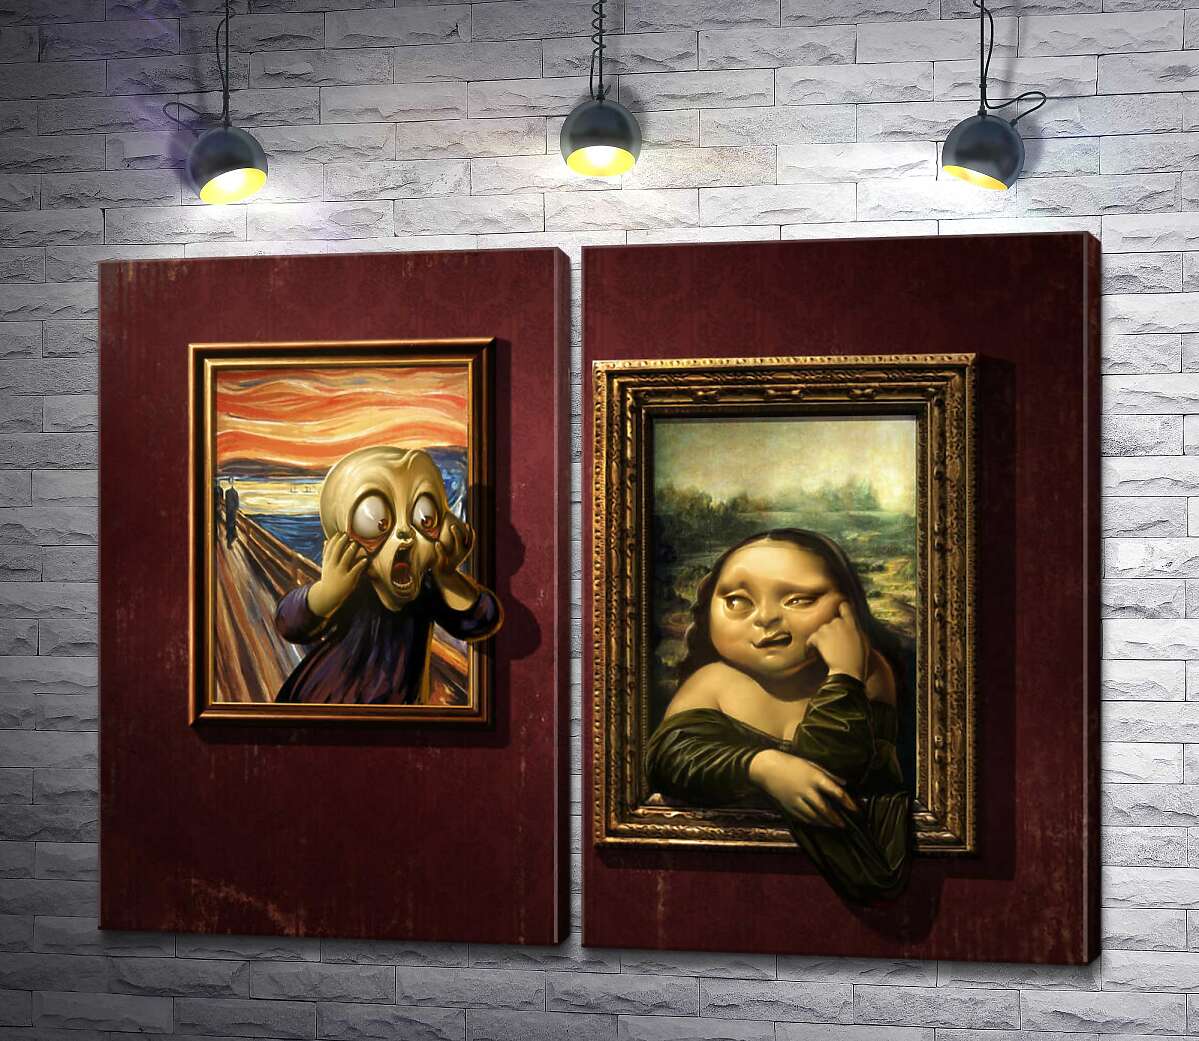 модульная картина Битва картин: "Крик" (Skrik) против "Моны Лизы" (Mona Lisa)